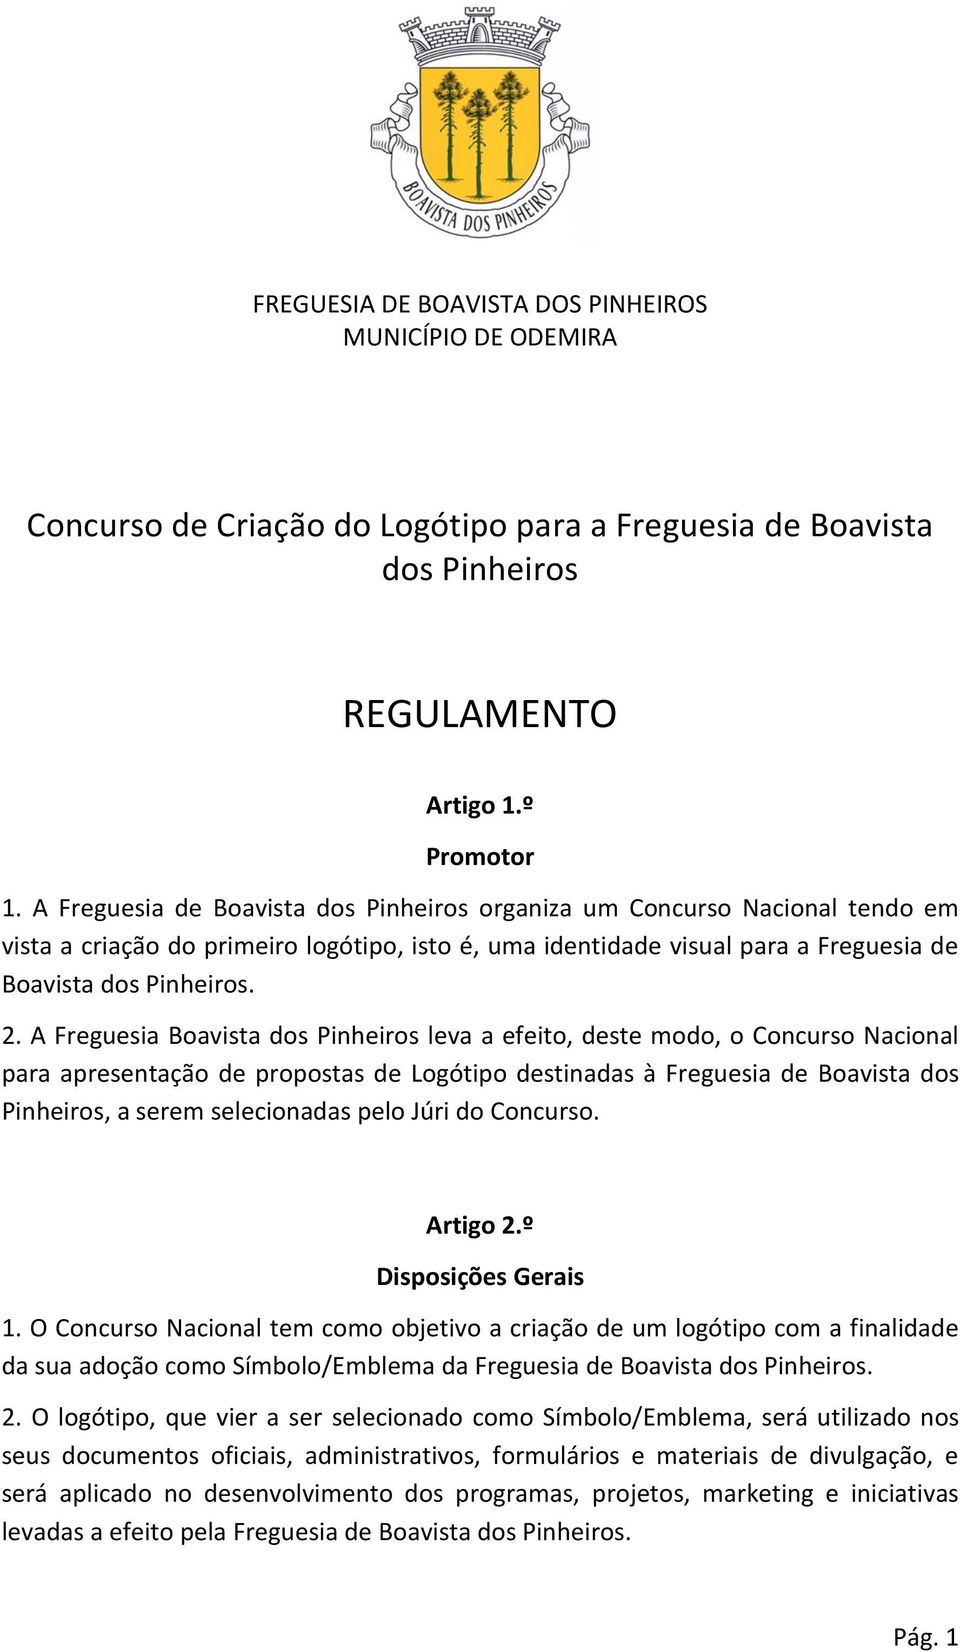 A Freguesia Boavista dos Pinheiros leva a efeito, deste modo, o Concurso Nacional para apresentação de propostas de Logótipo destinadas à Freguesia de Boavista dos Pinheiros, a serem selecionadas